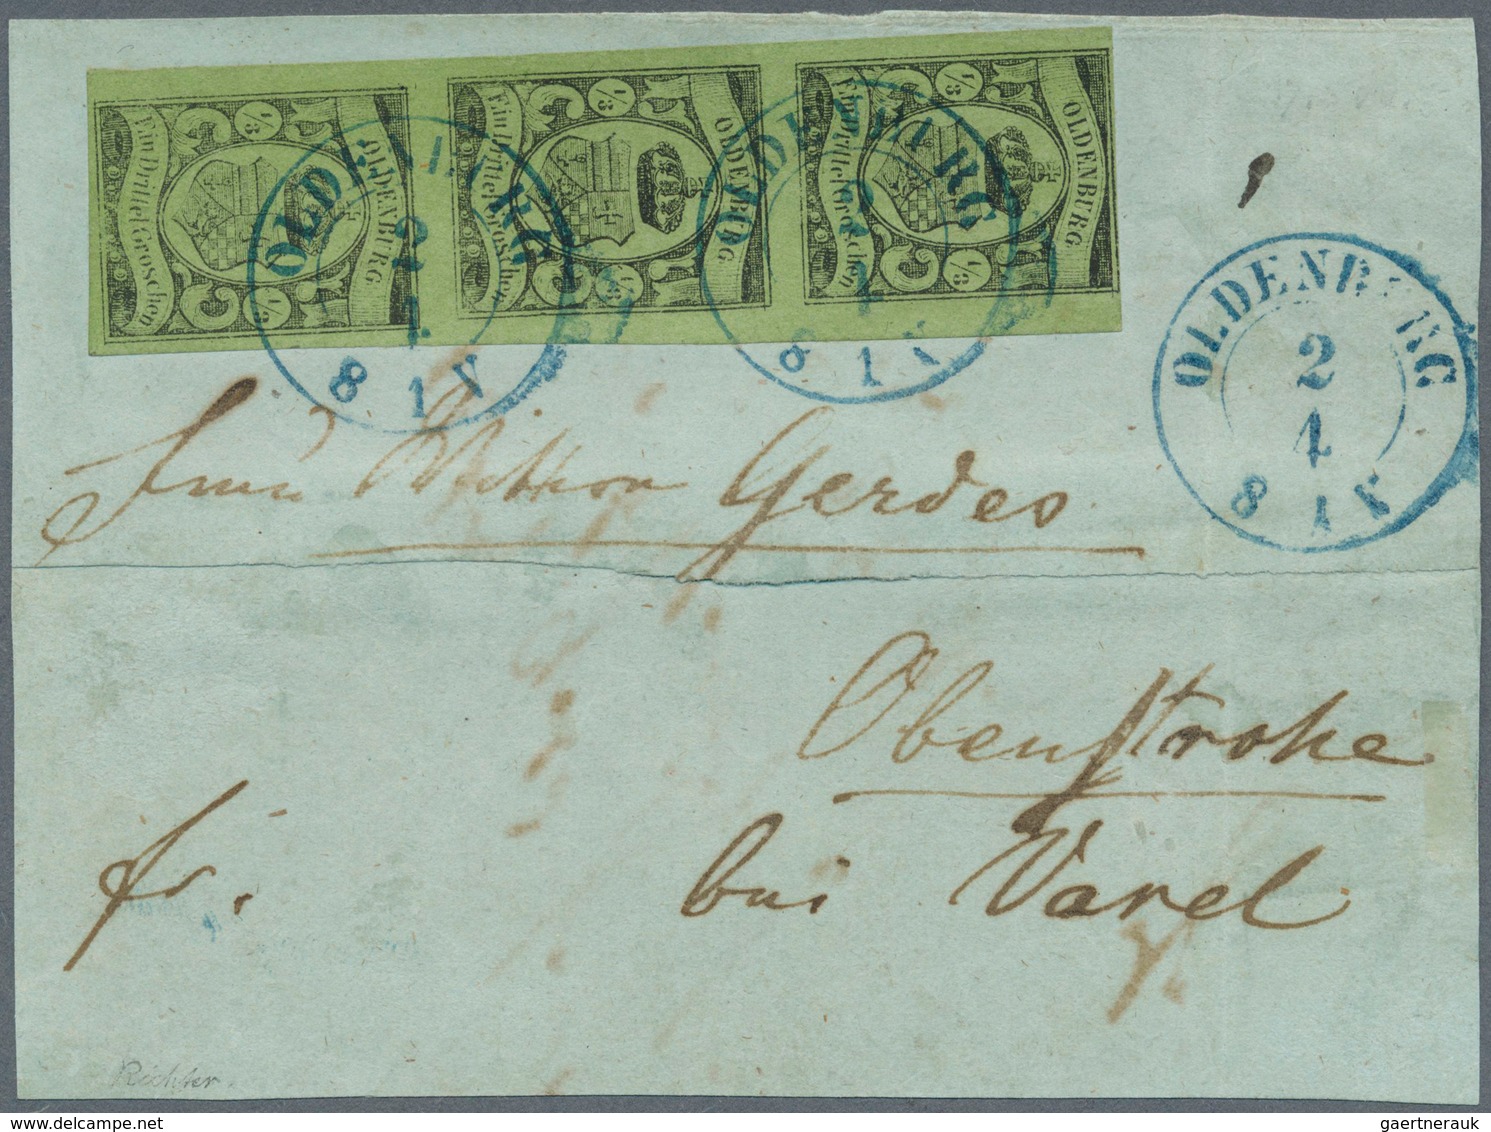 Oldenburg - Marken Und Briefe: 1859/61: ⅓ Gr. Schwarz Auf Grün, Senkrechter Dreierstreifen, Farbfris - Oldenburg